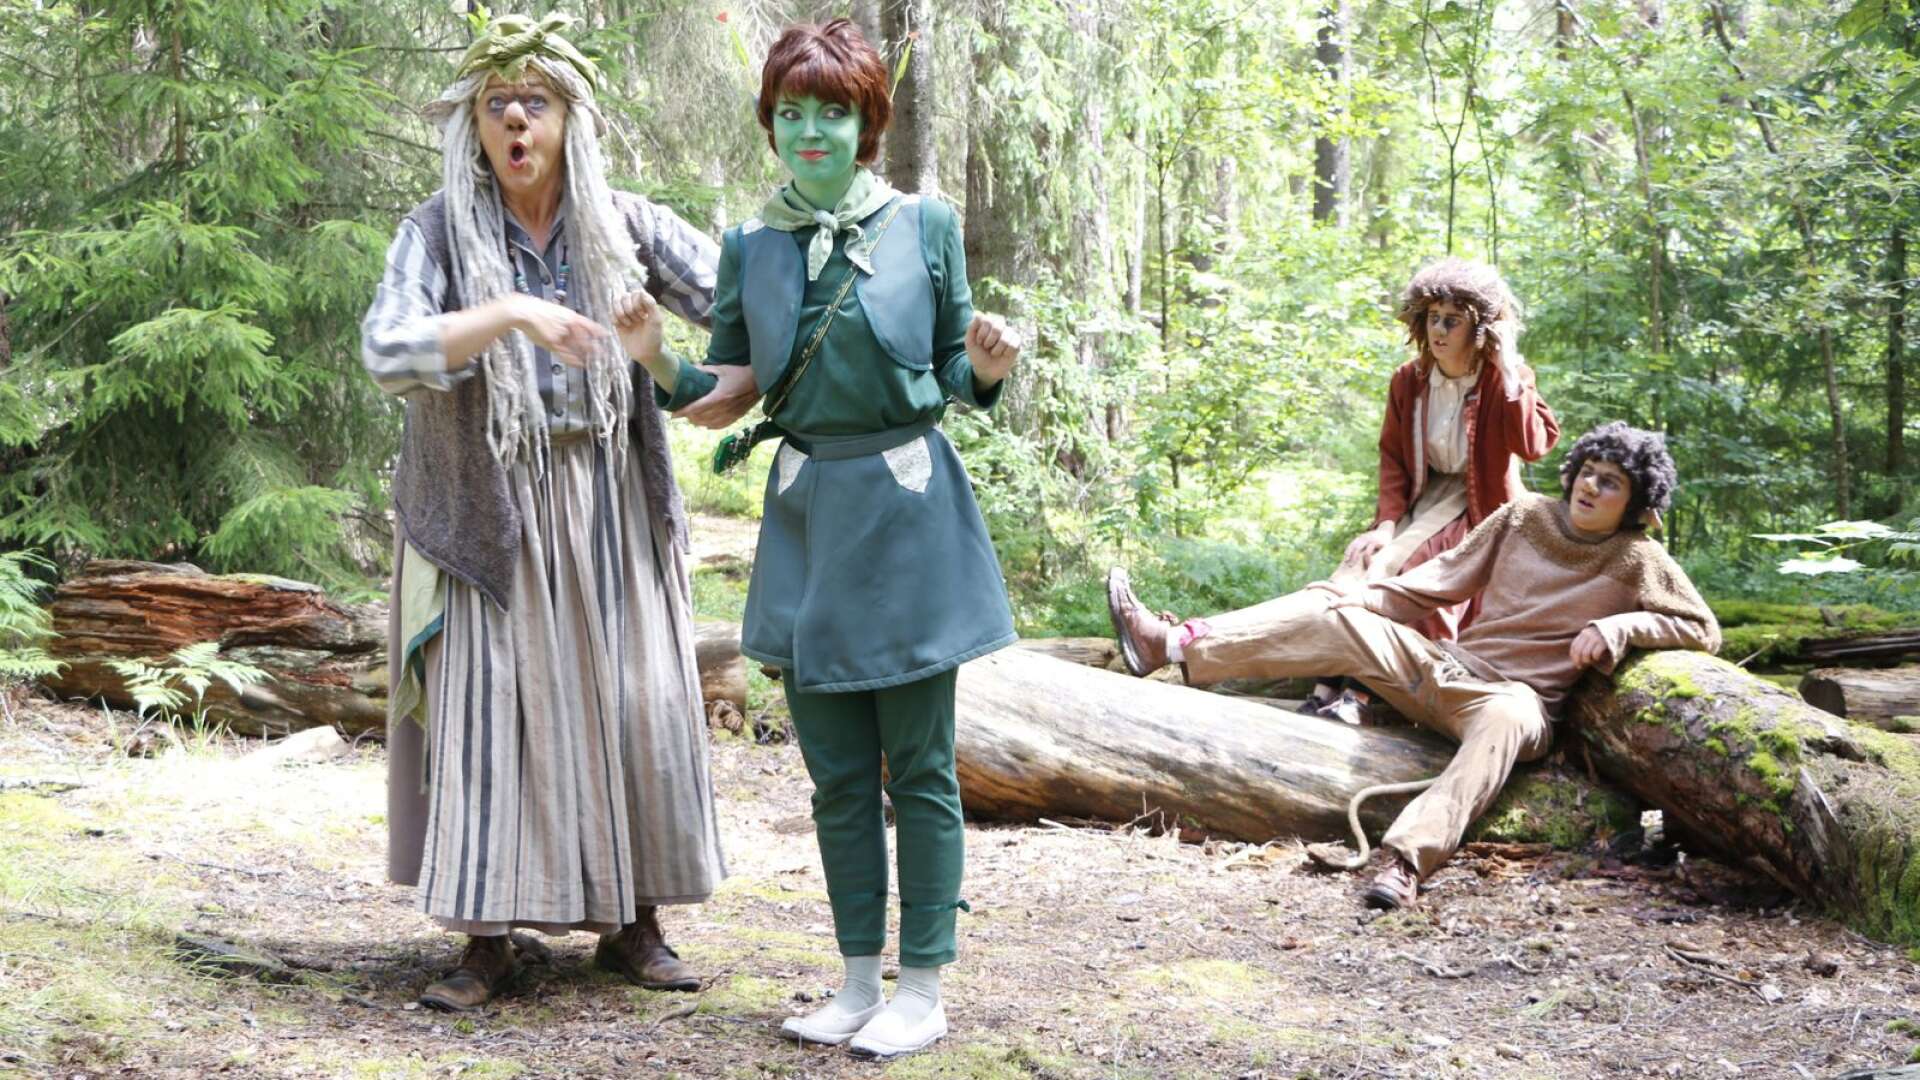 Kloka trollmor (Charlotte Forsman) vet hur barnen kan hjälpa Trolf (Ville Danielsson Kihlberg) som trillat. Alven Alva (Caroline Forsman) och Trulsan (Alva Söderberg) hänger på. 